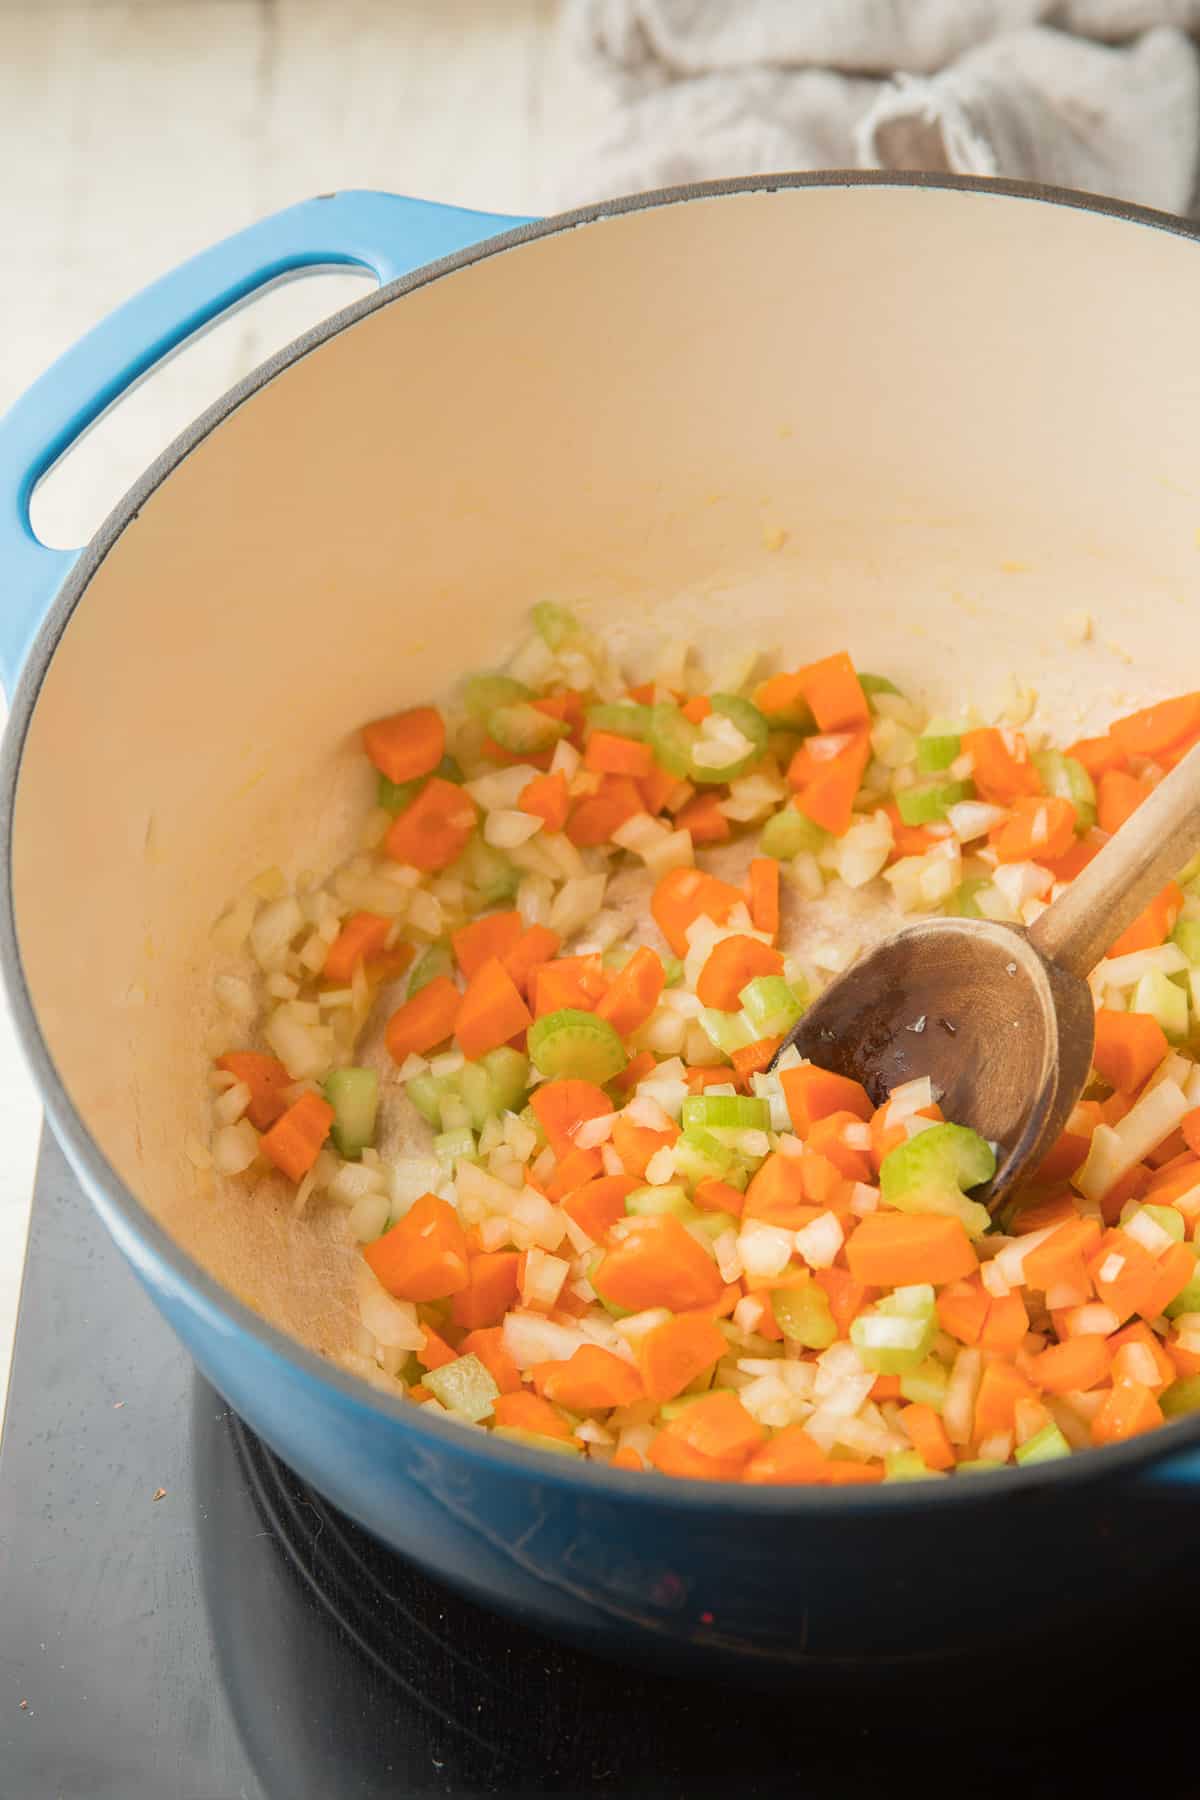 En una cacerola, cocine las cebollas, las zanahorias y el apio con una cuchara de madera.